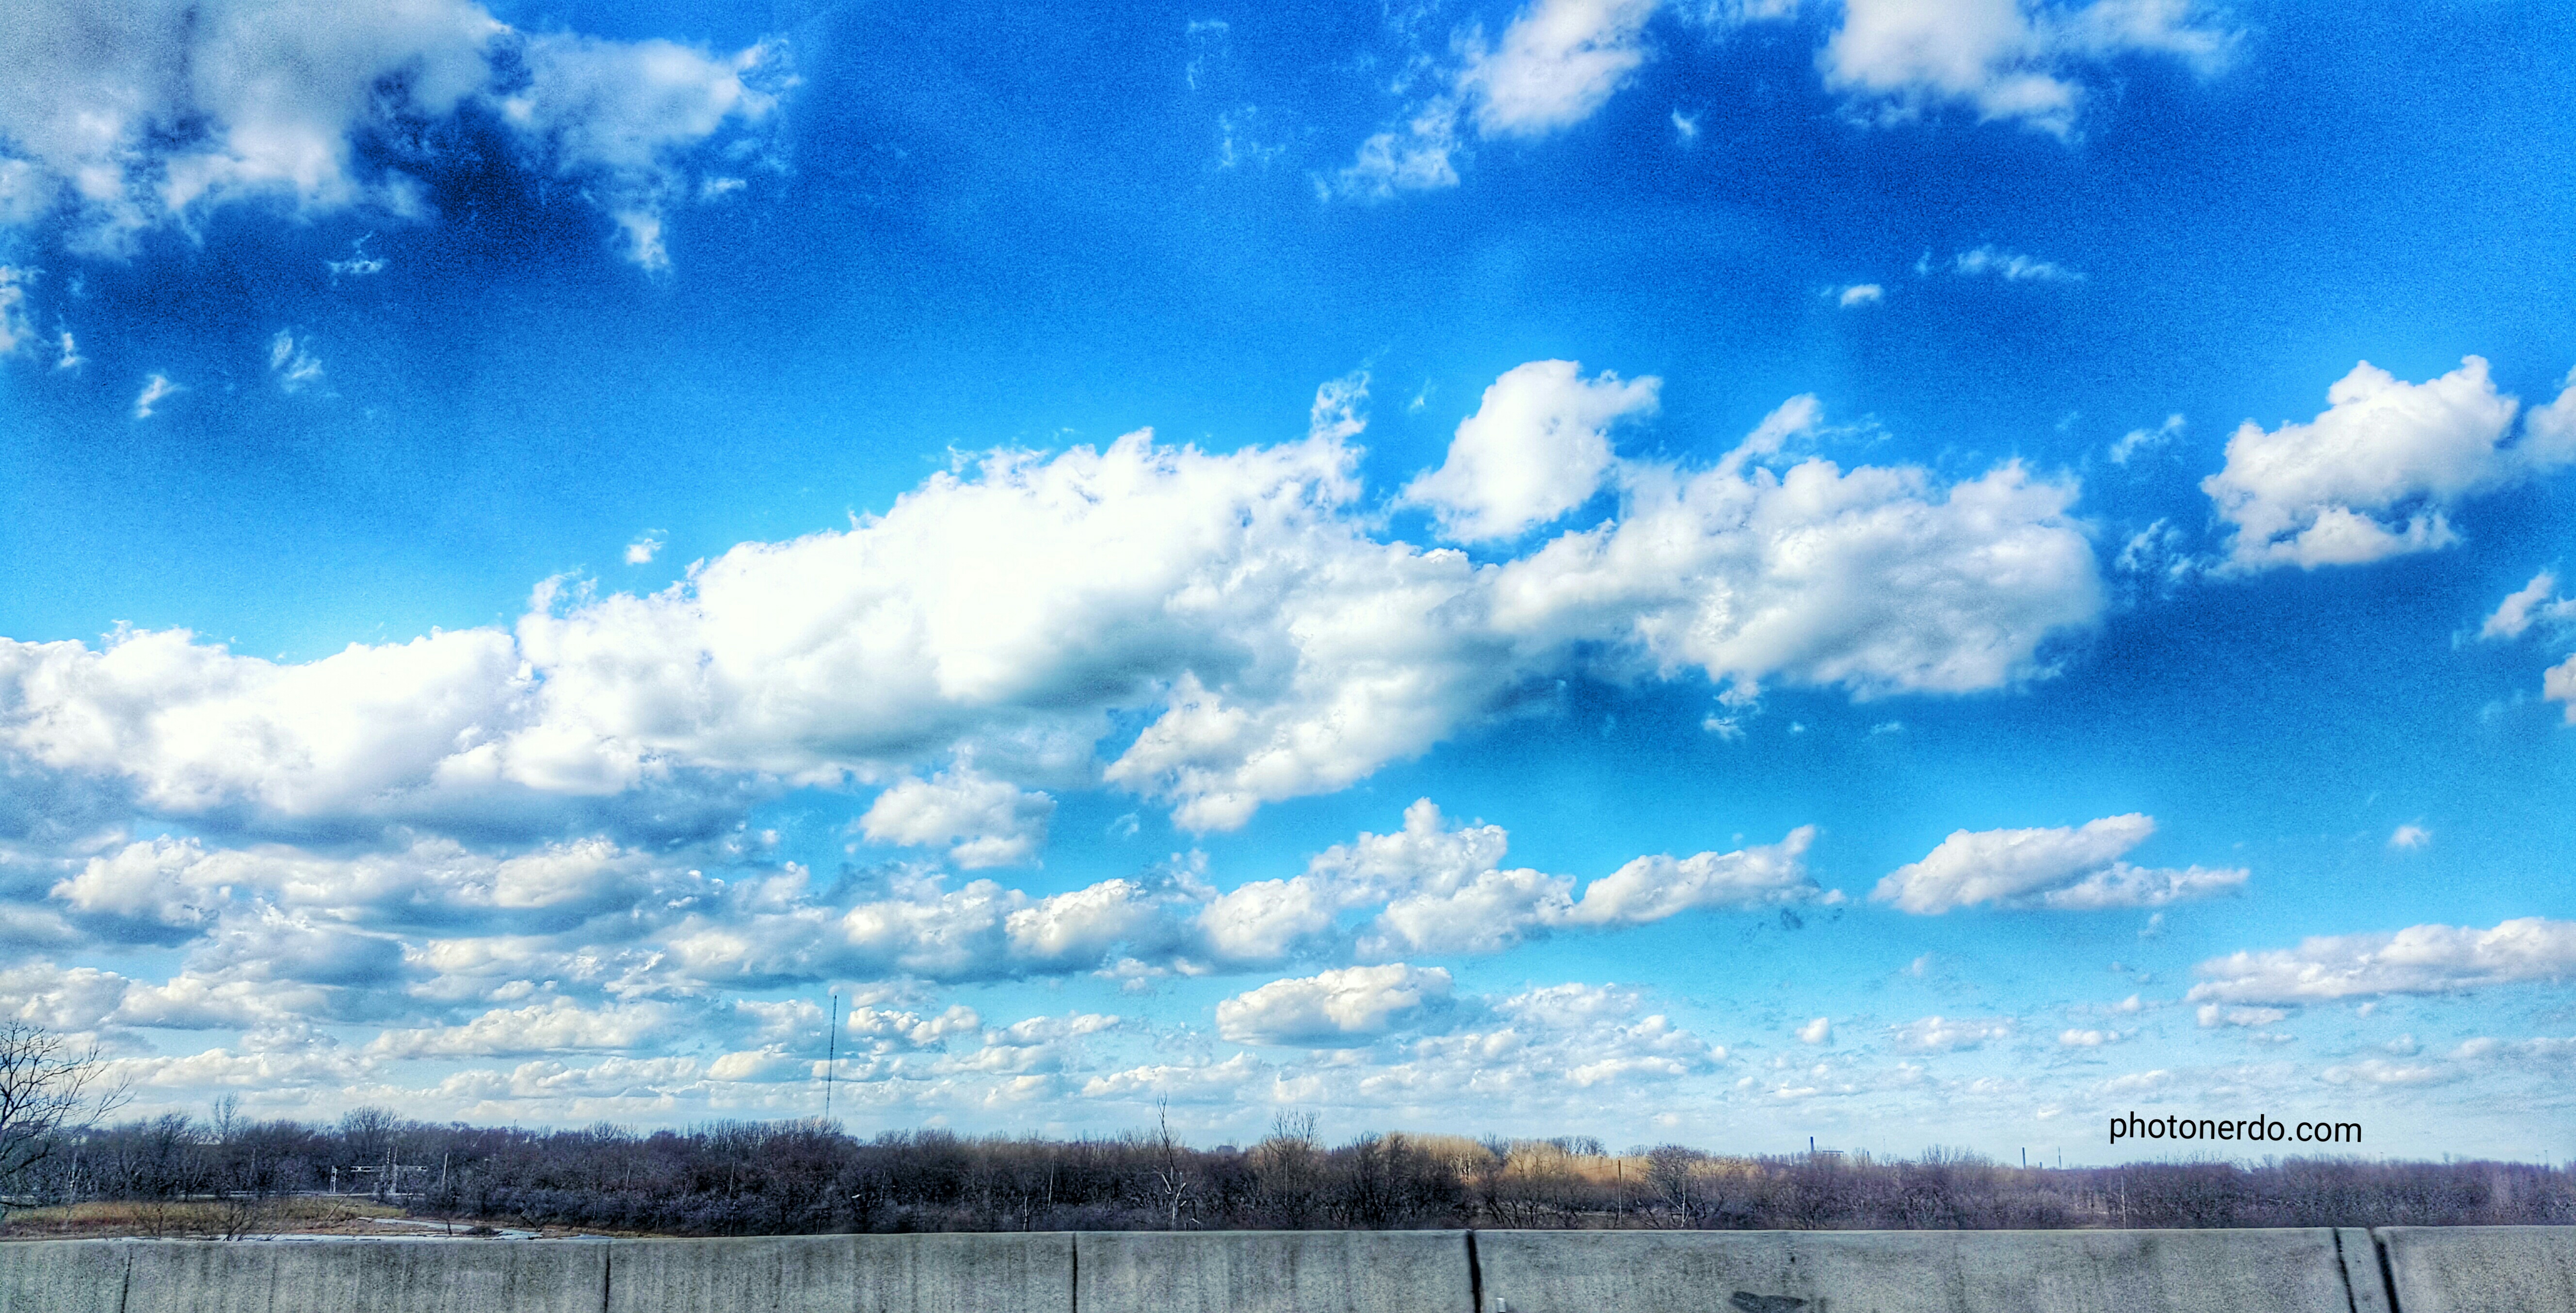 Cloudy blue sky - PhotoNerdo